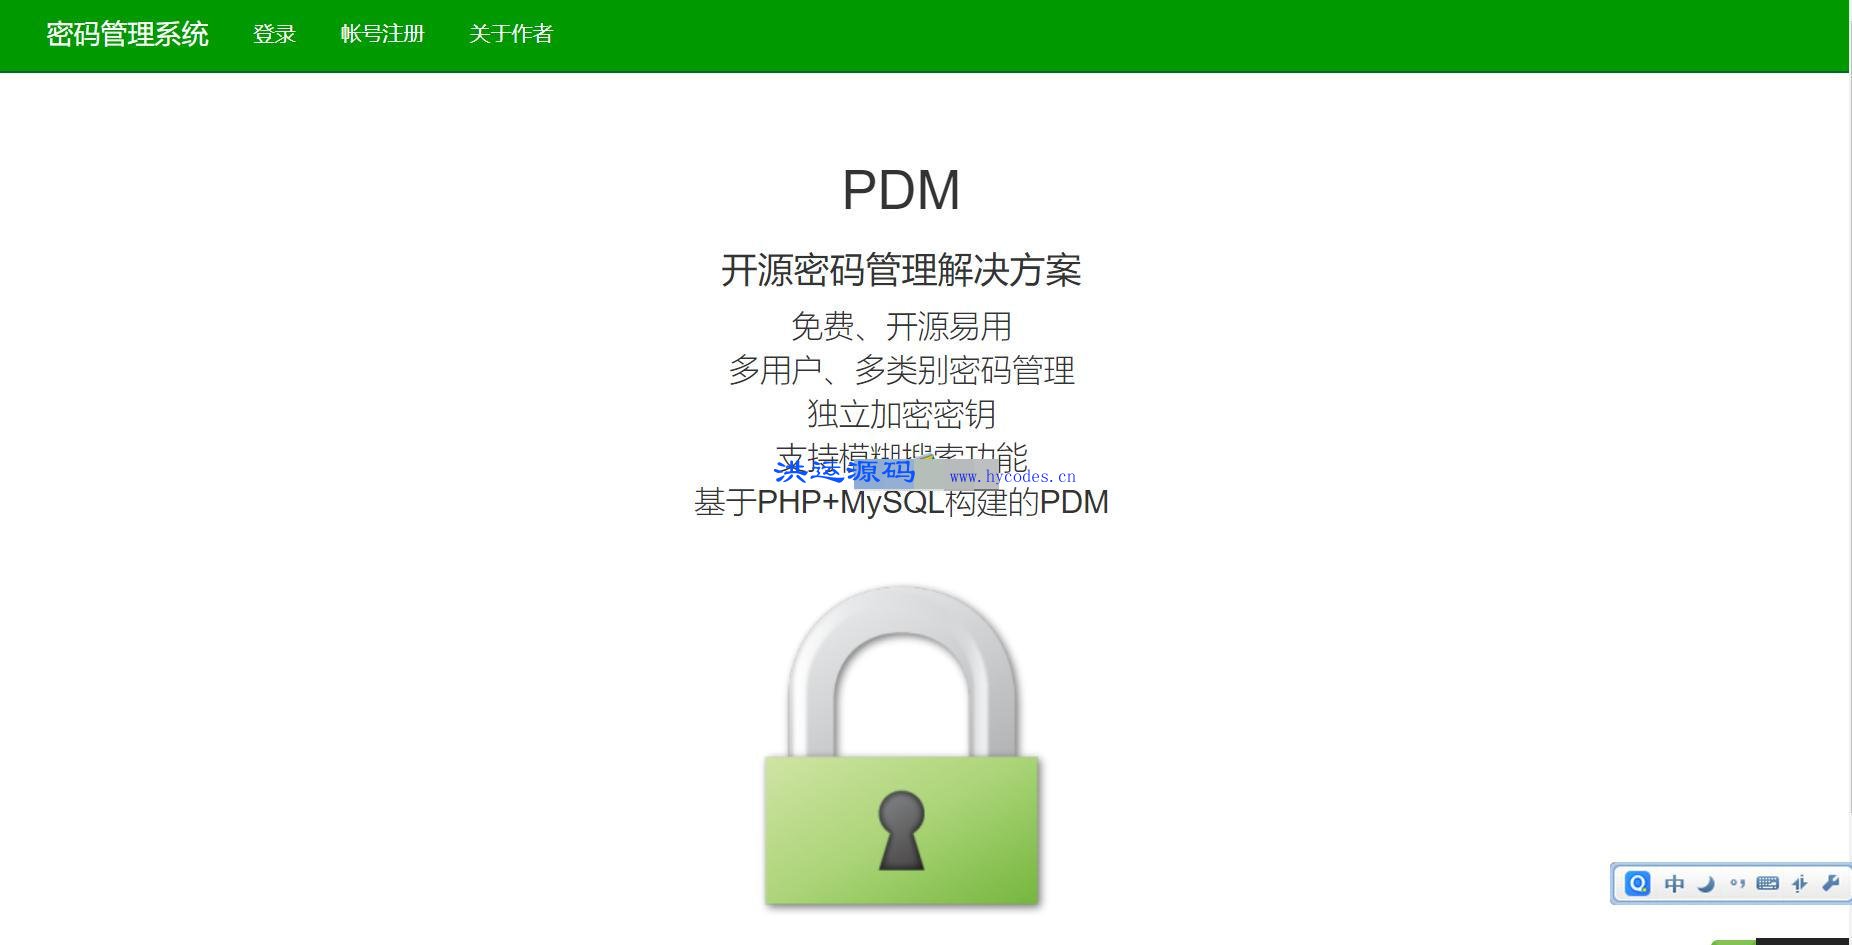 PDM密码管理系统